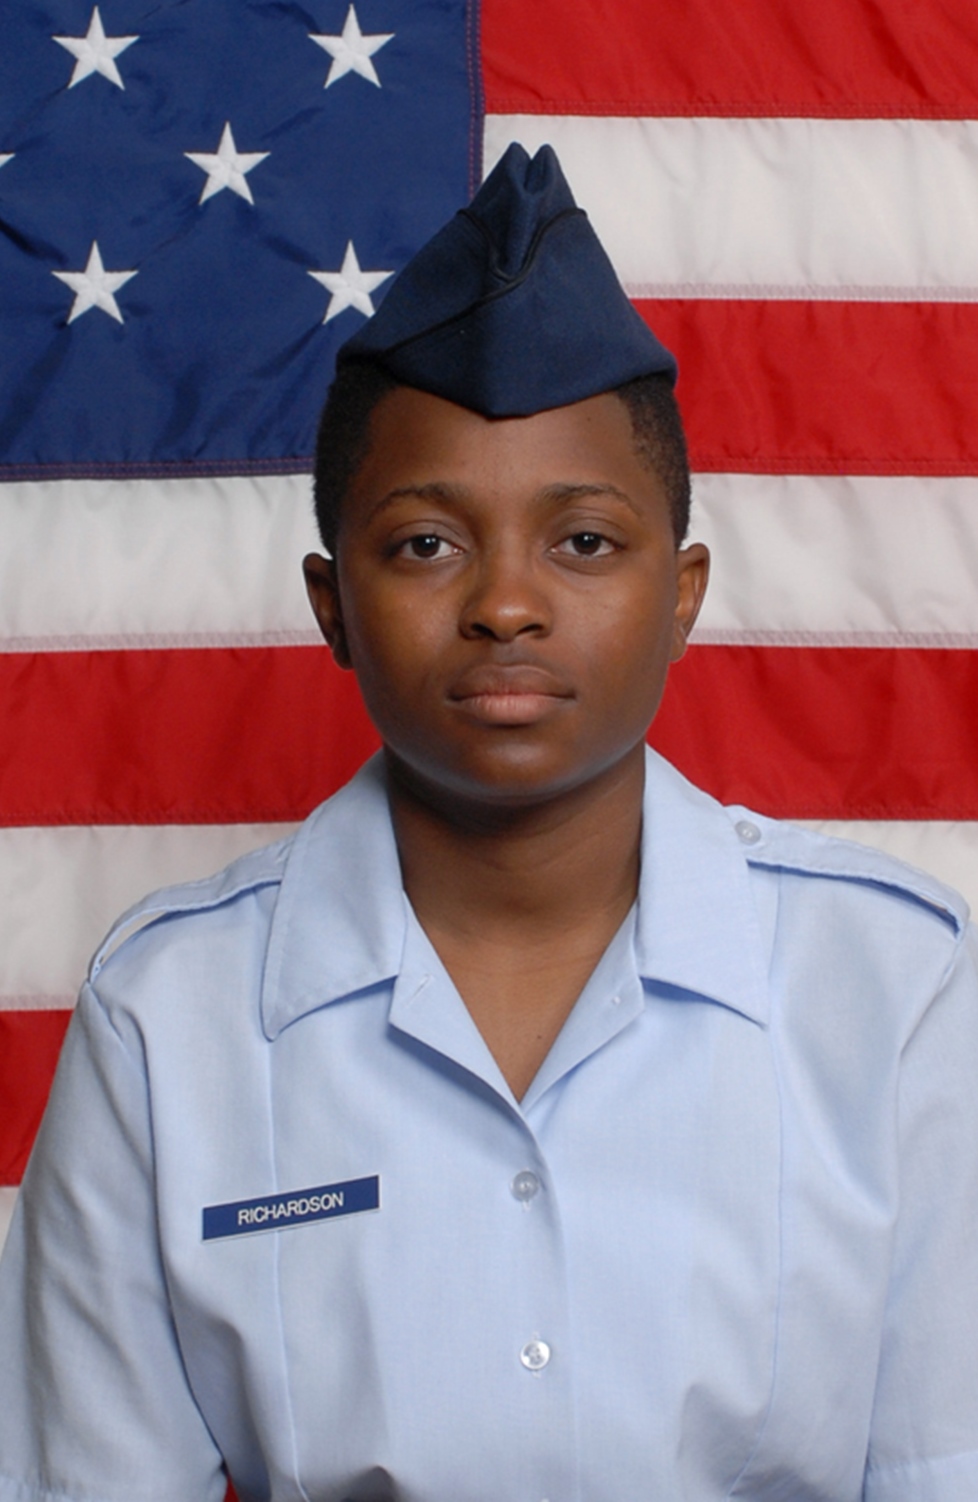 Air National Guard Airman Jalisa M. Richardson